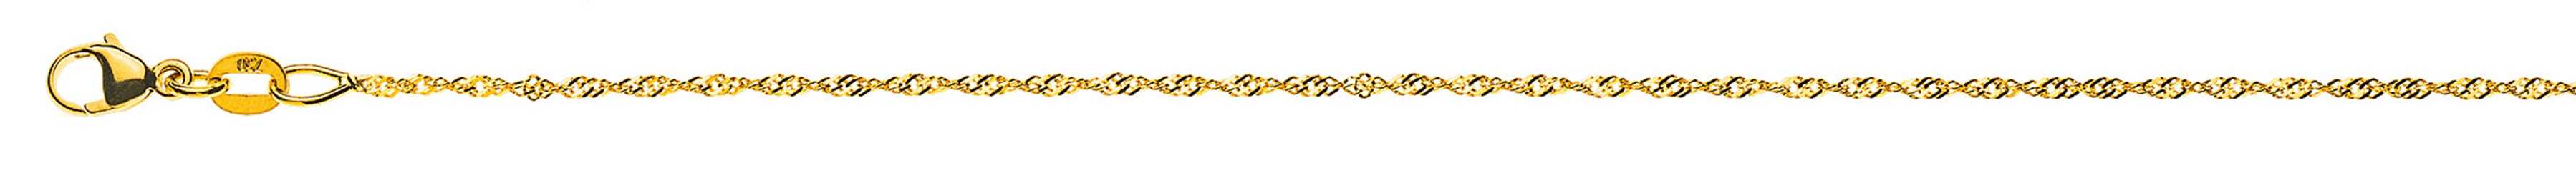 AURONOS Prestige Necklace Yellow Gold 18K Singapore Chain 45cm 1.2mm